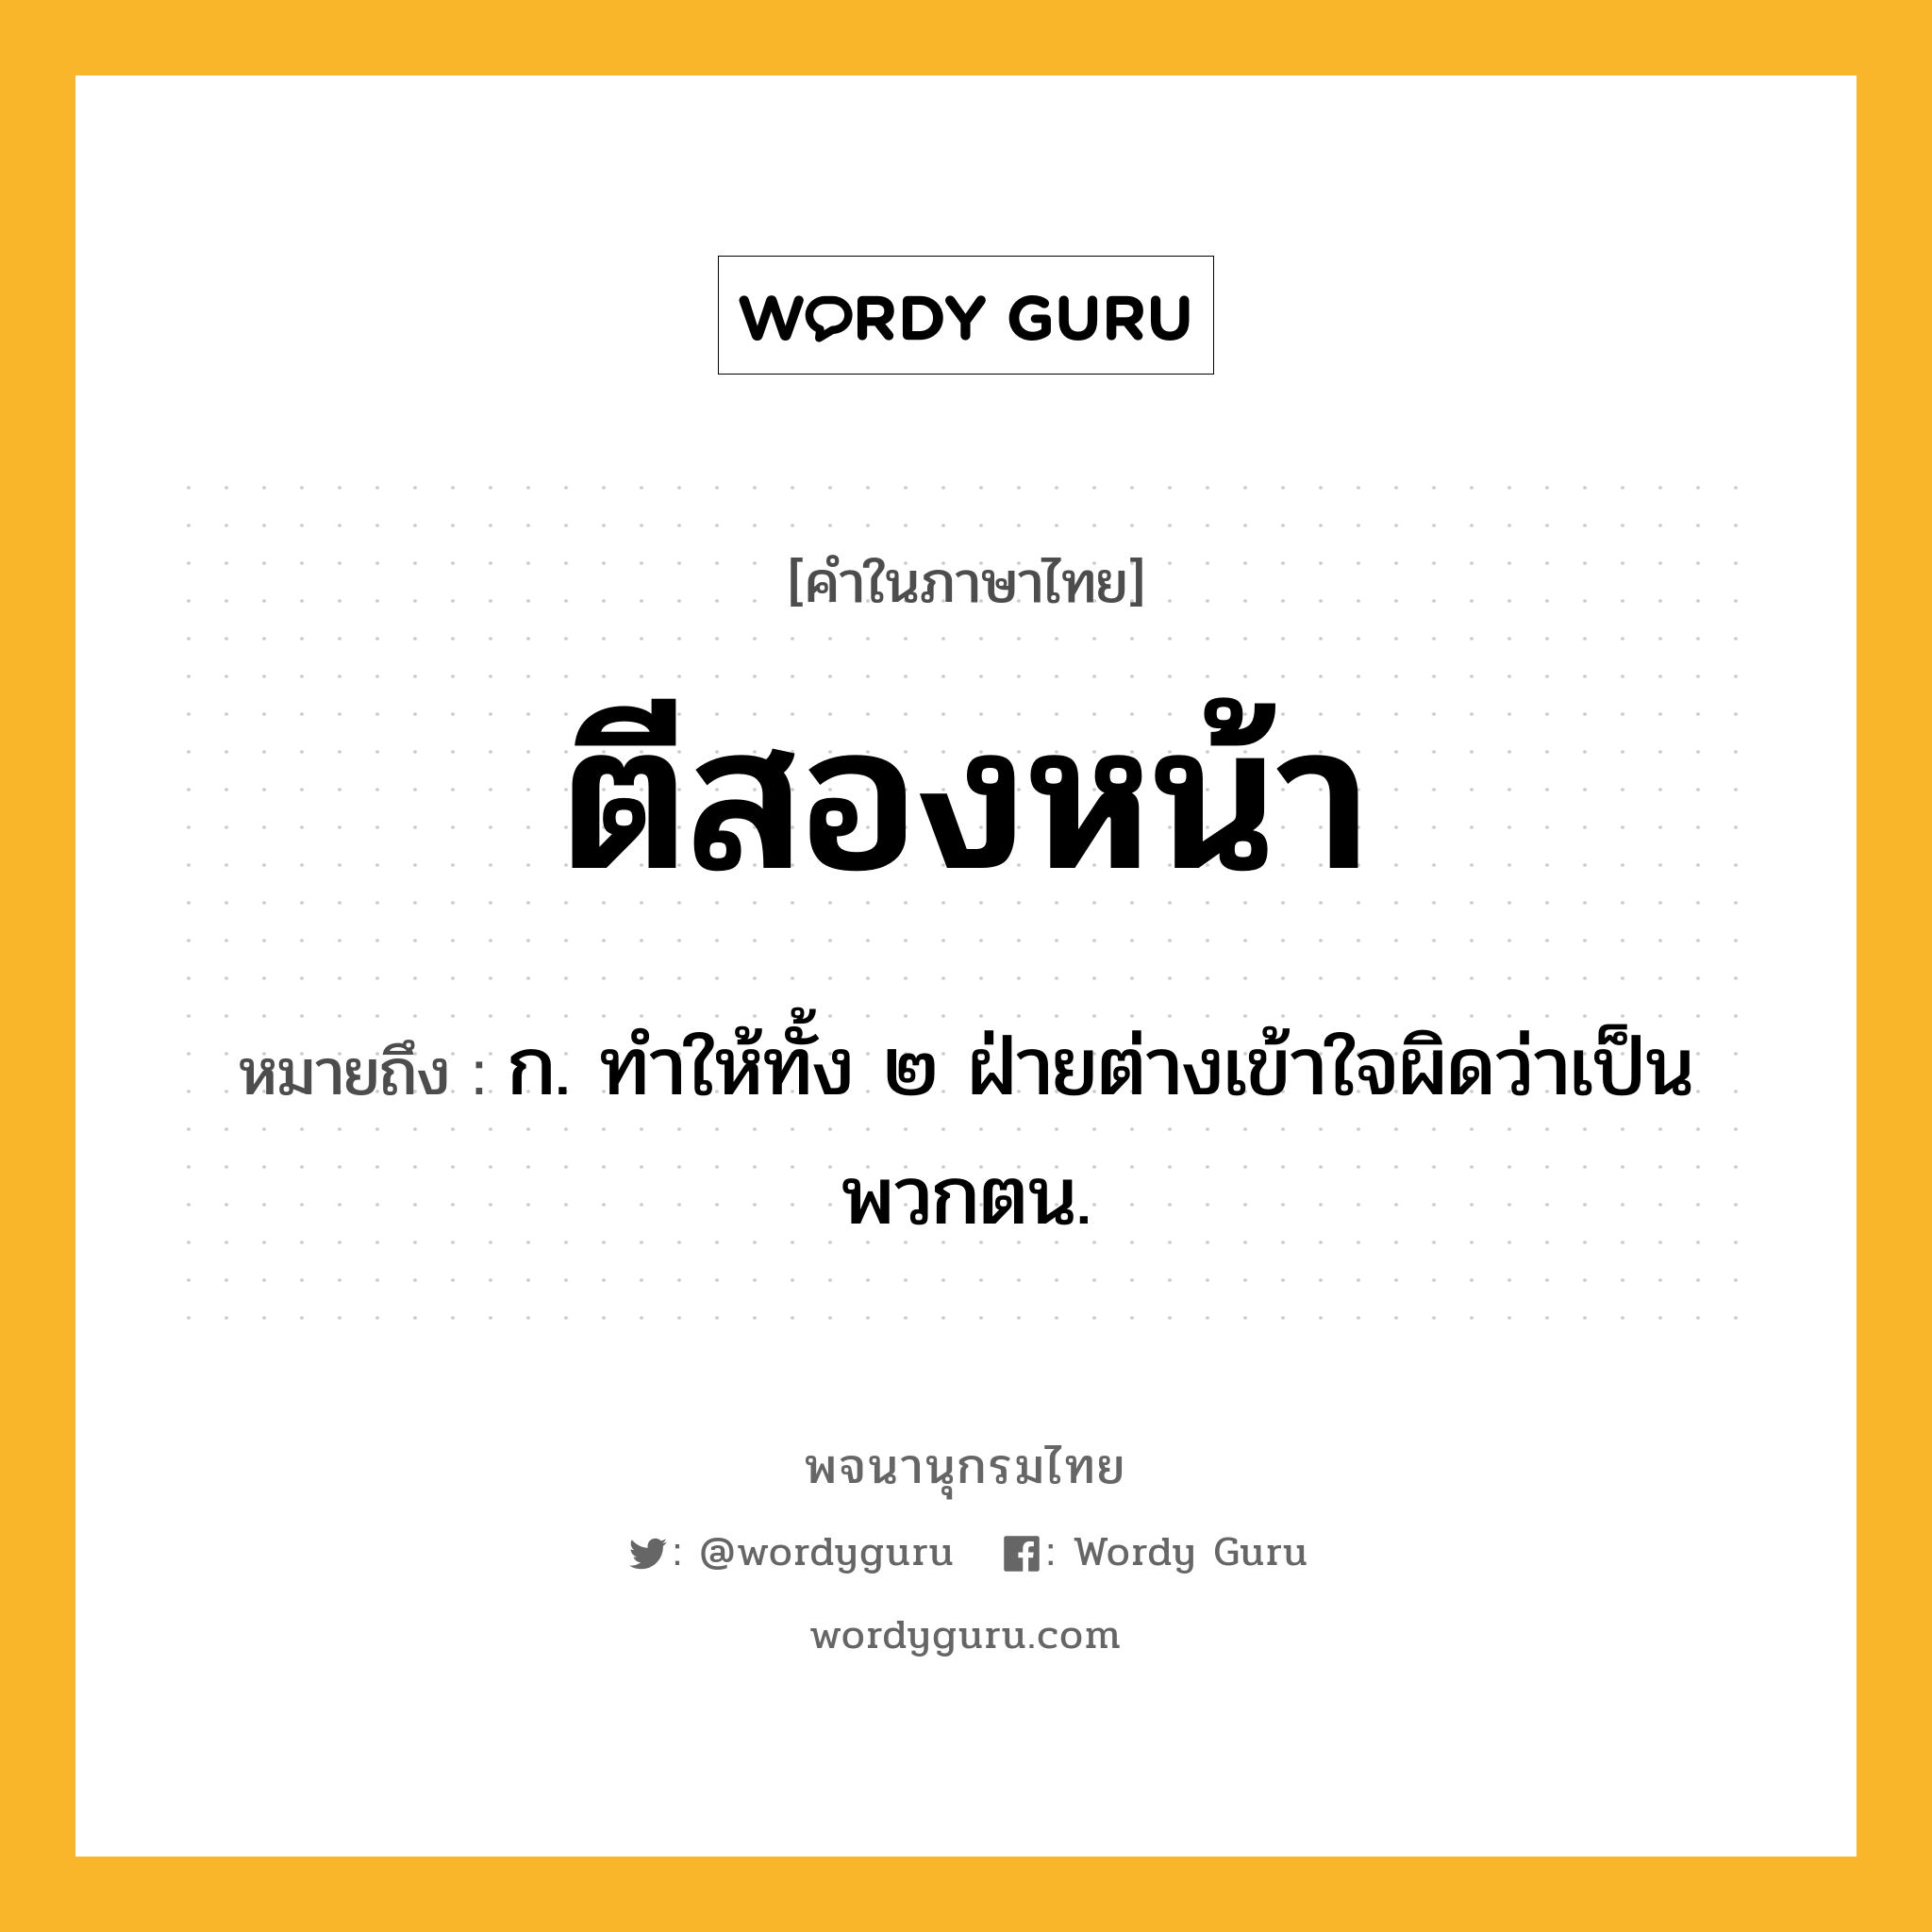 ตีสองหน้า ความหมาย หมายถึงอะไร?, คำในภาษาไทย ตีสองหน้า หมายถึง ก. ทําให้ทั้ง ๒ ฝ่ายต่างเข้าใจผิดว่าเป็นพวกตน.